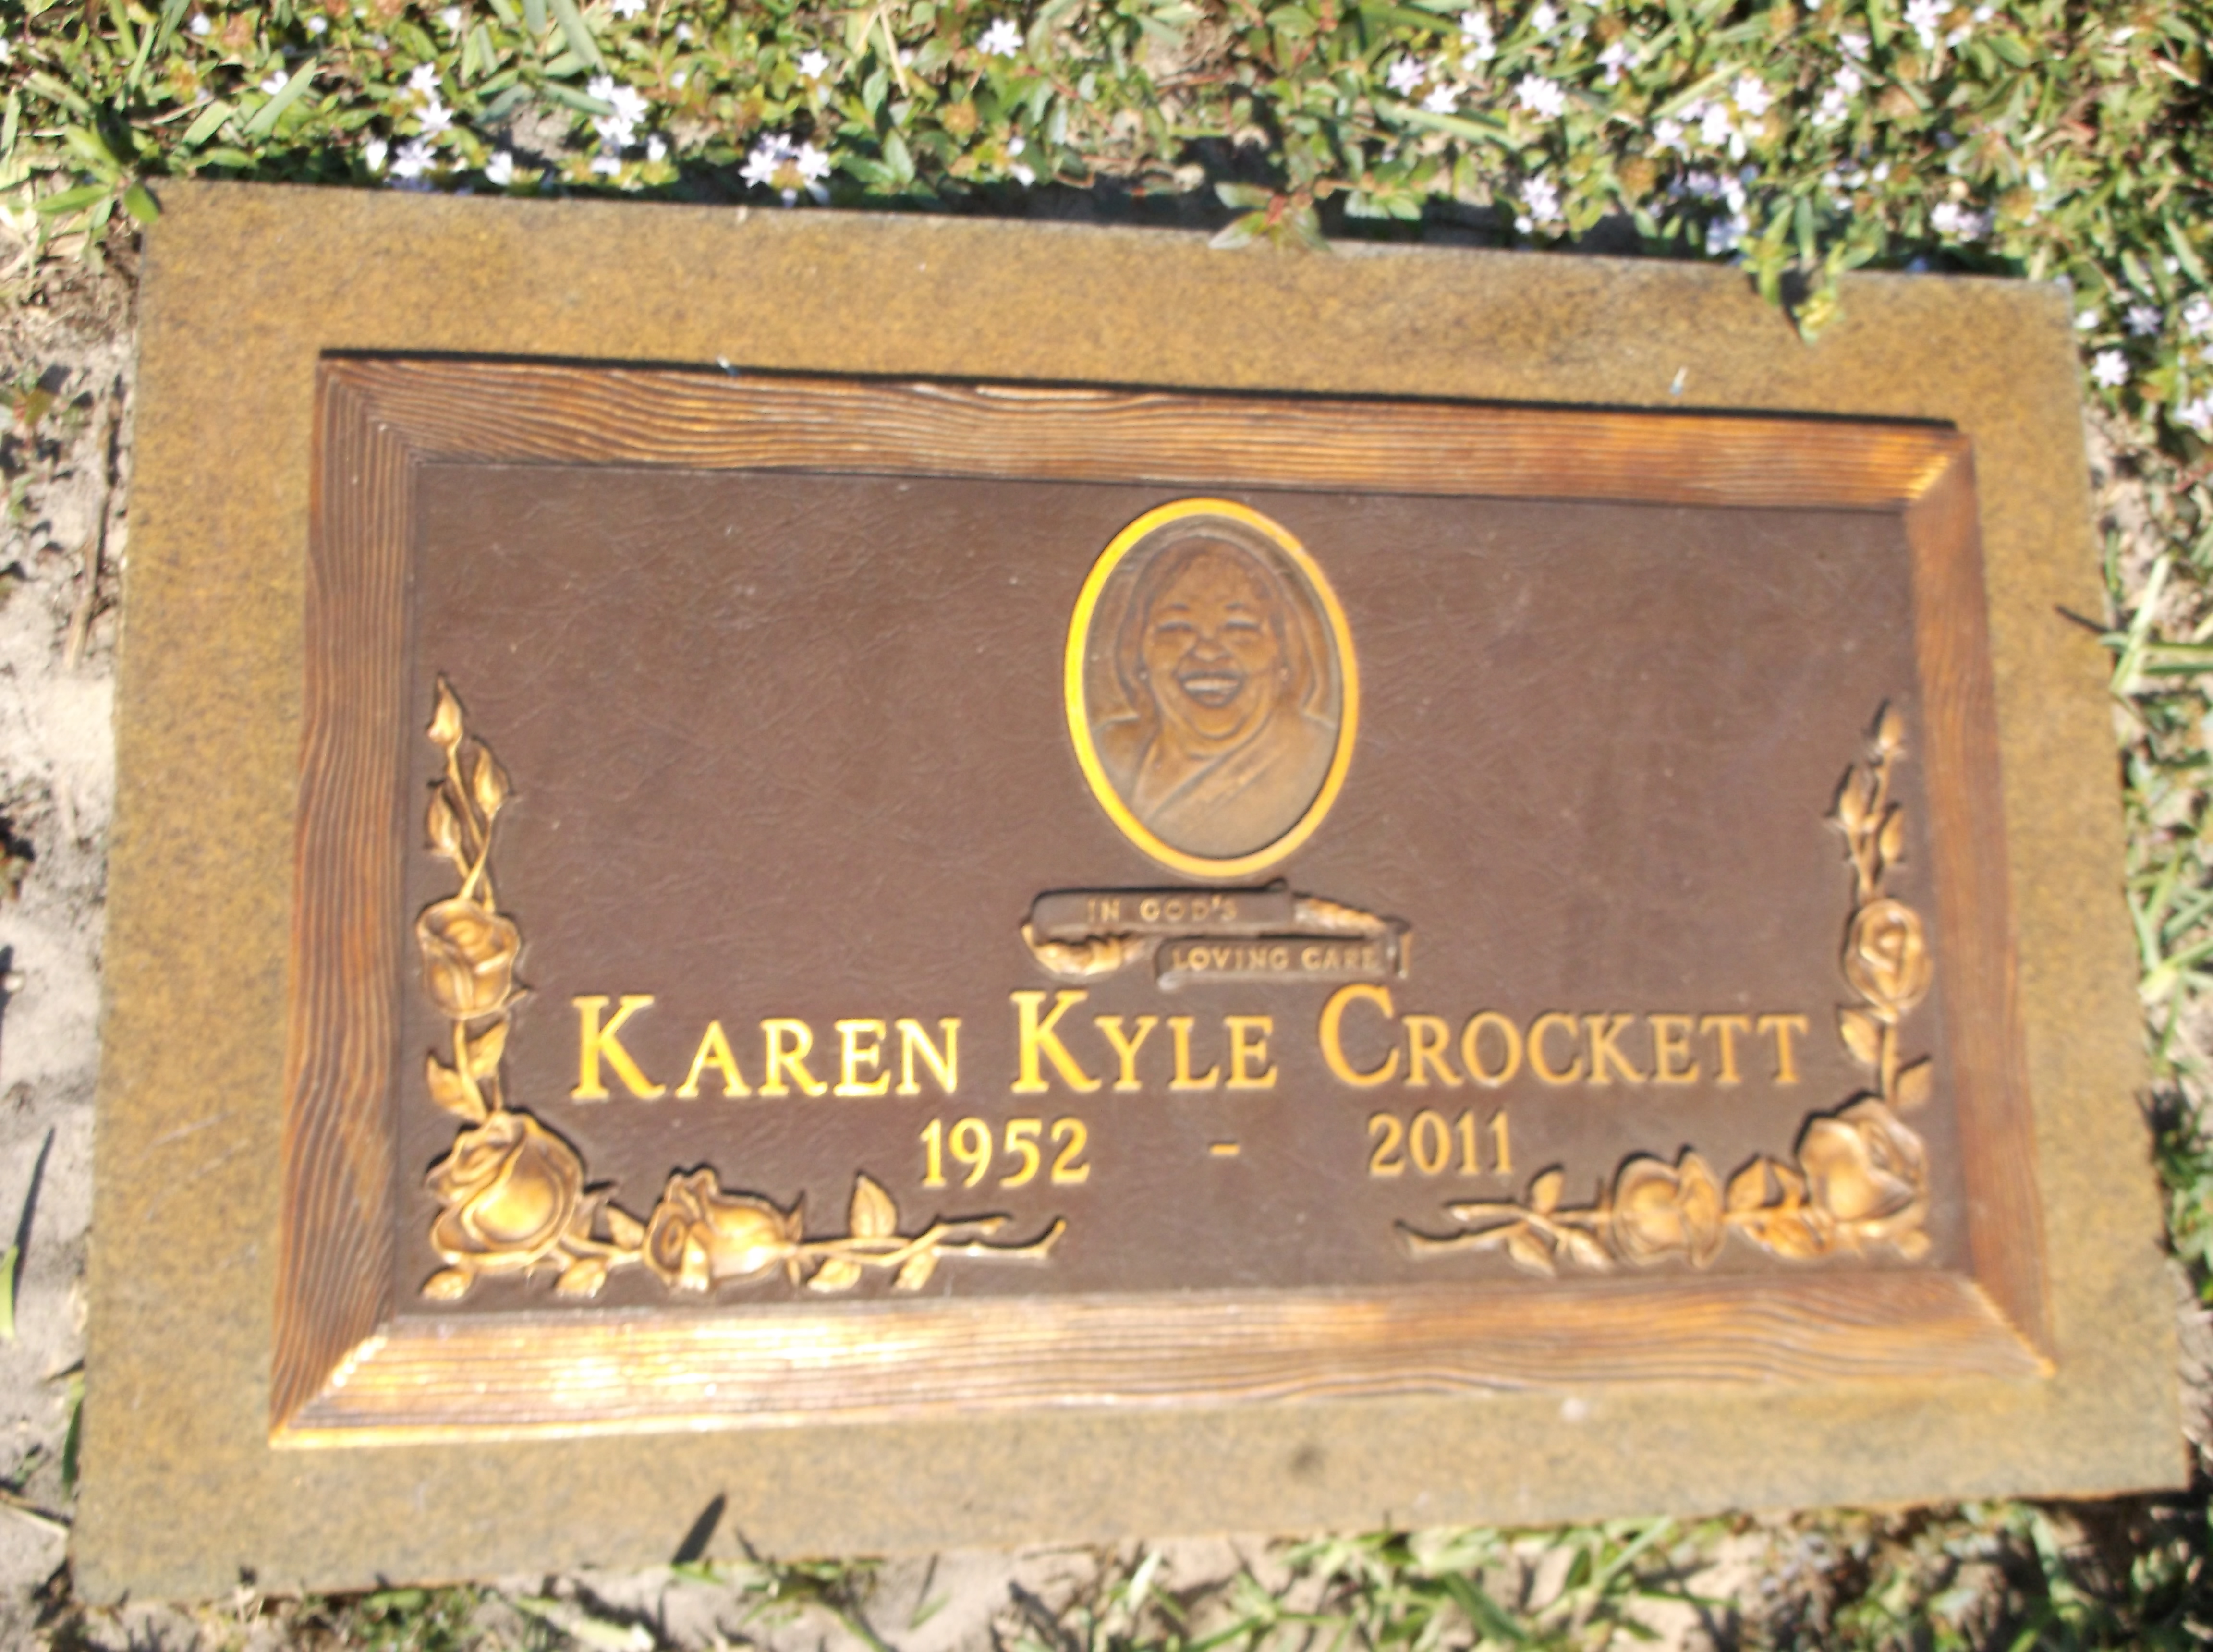 Karen Kyle Crockett